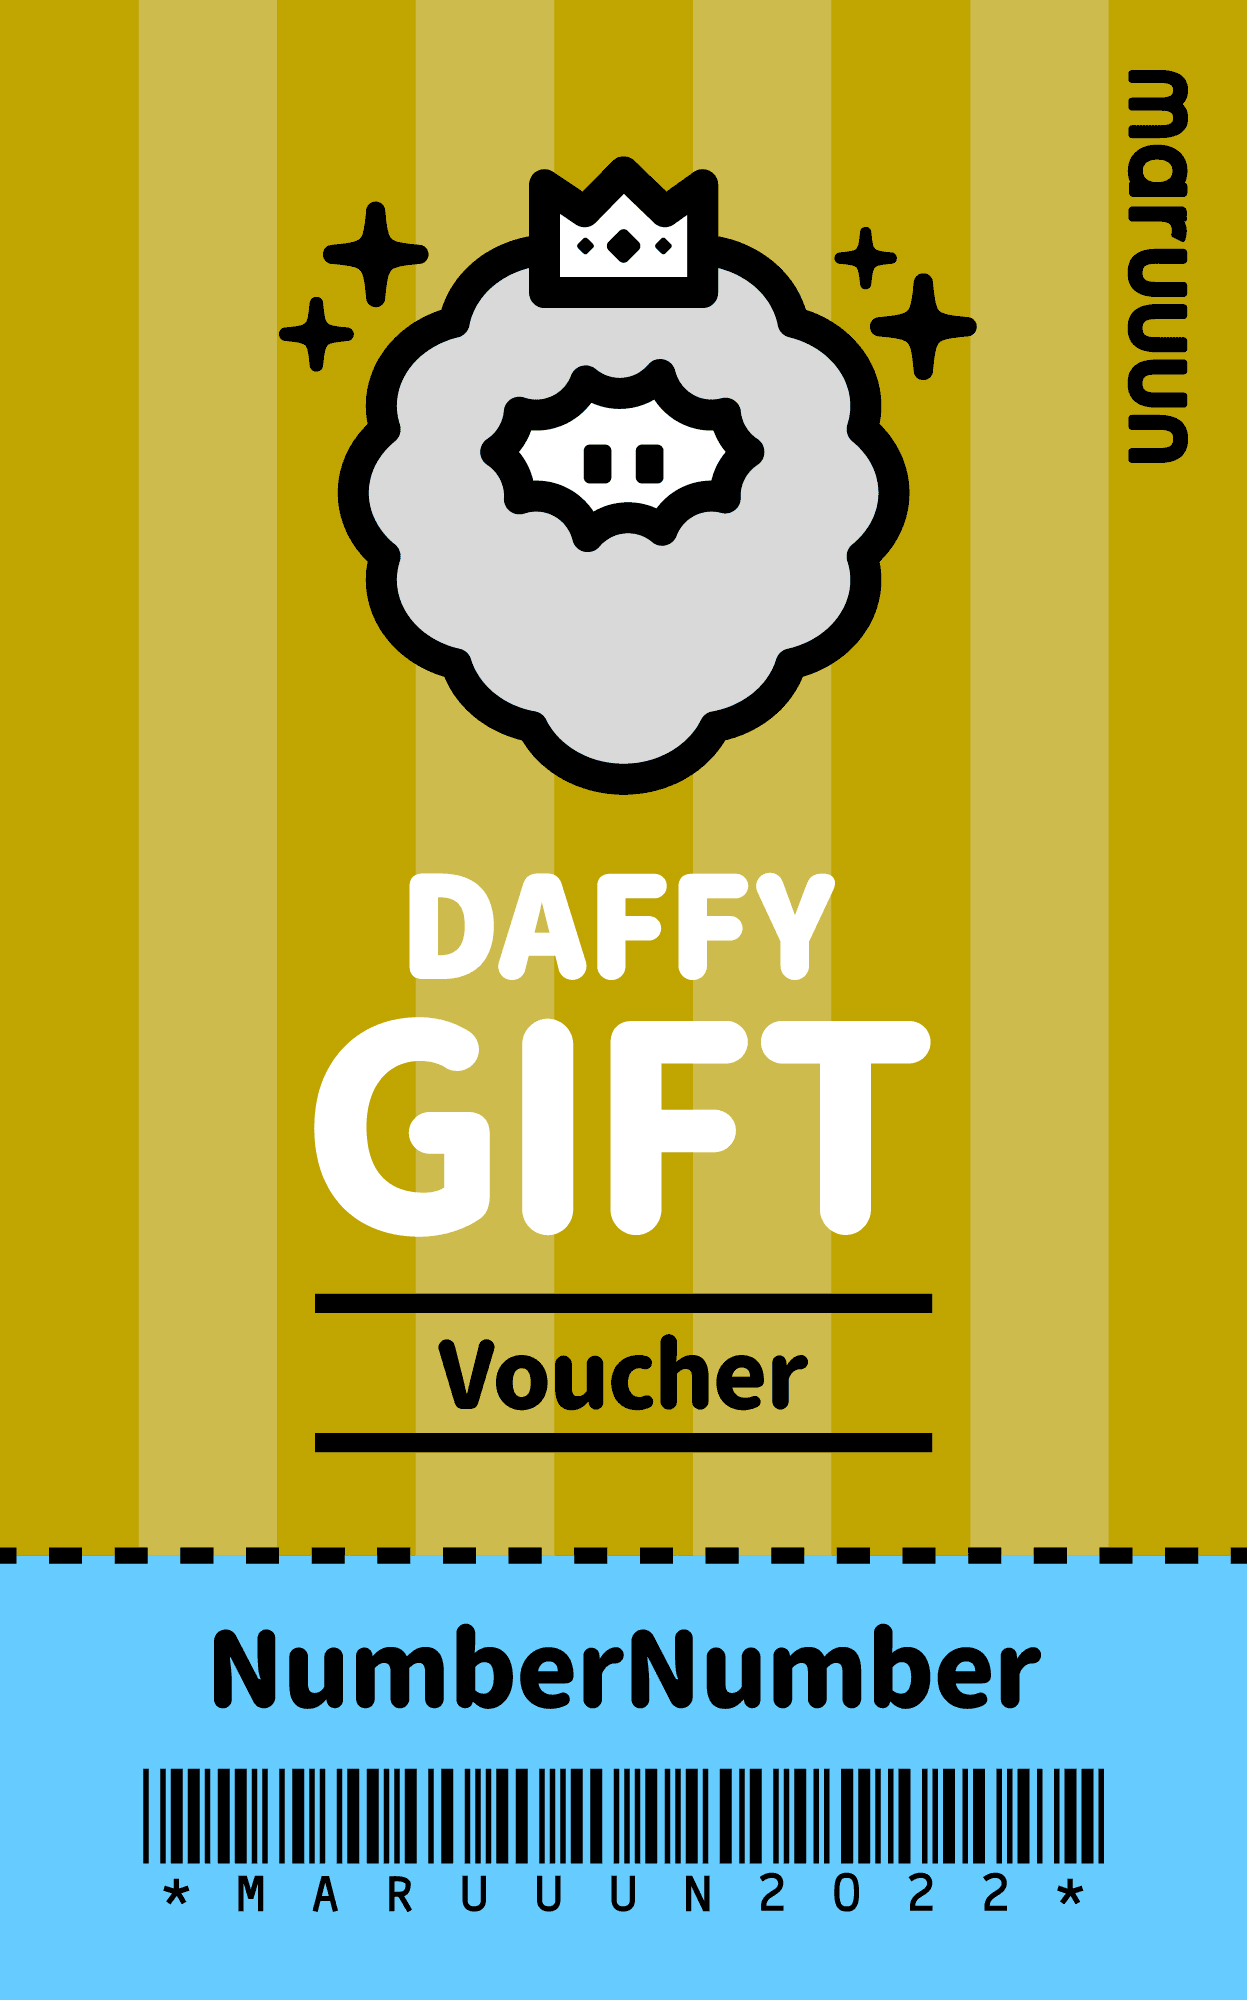 Daffy Special Voucher